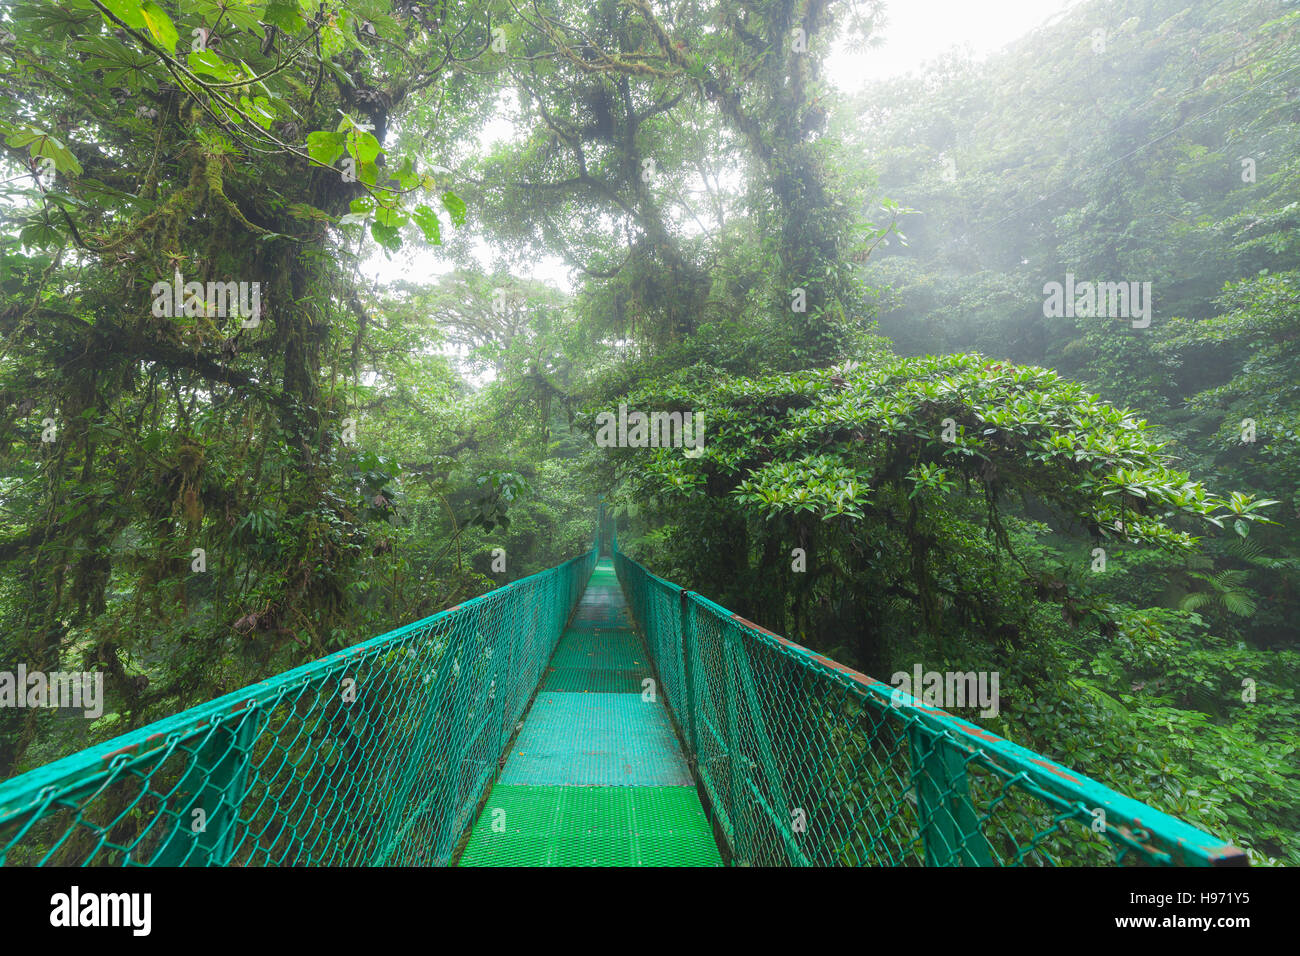 Suspension bridge in rainforest Stock Photo